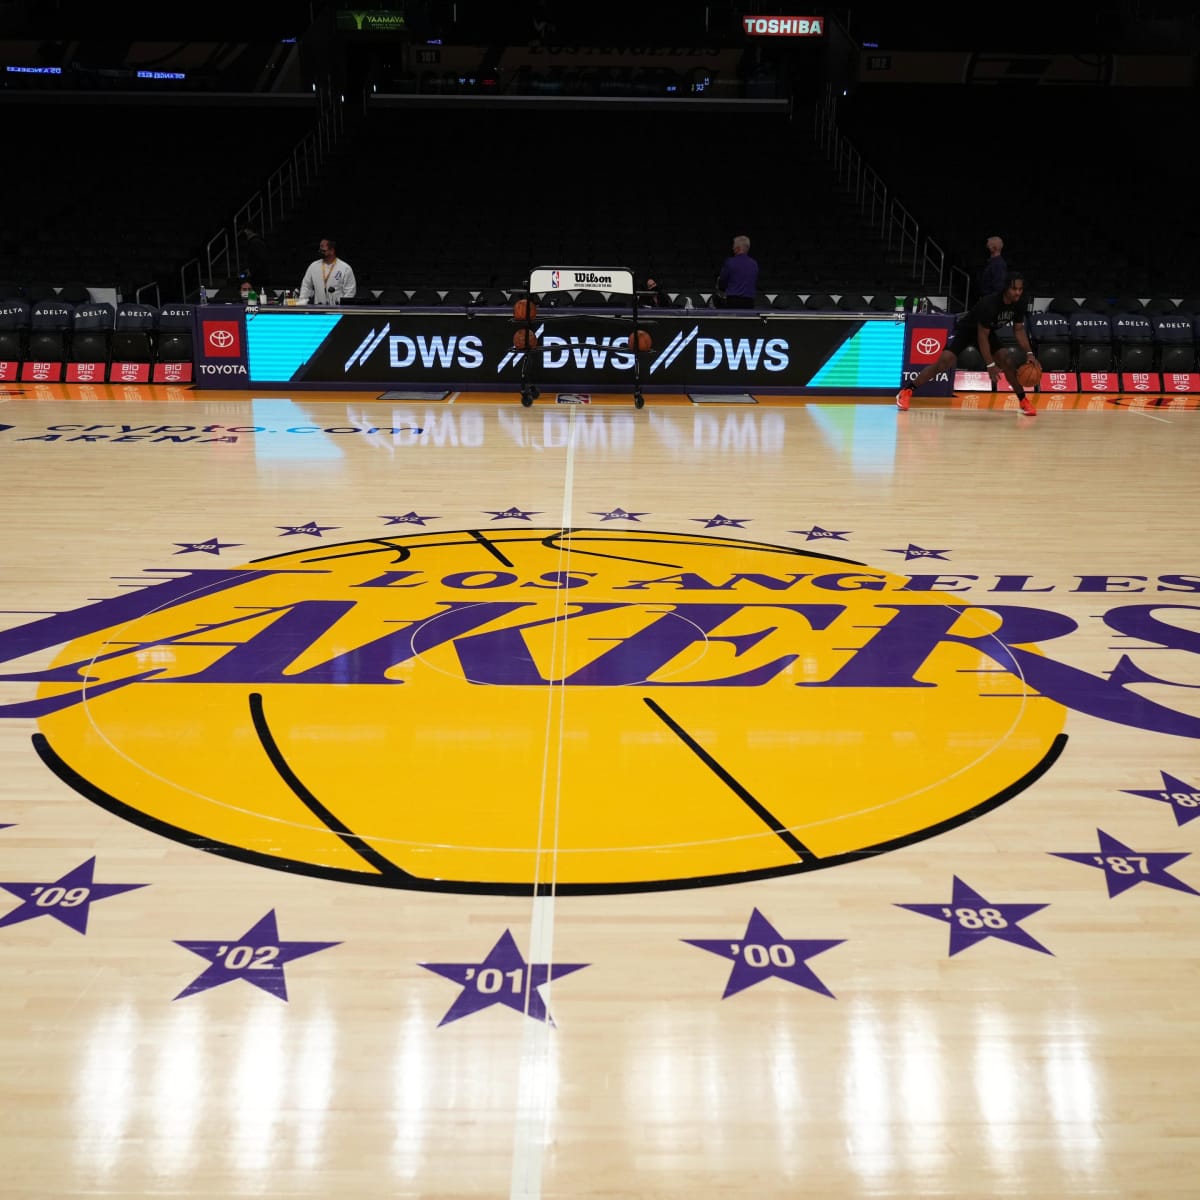 2023 NBA Lakers STATEMENT BASEBALL Black Jersey - Kitsociety